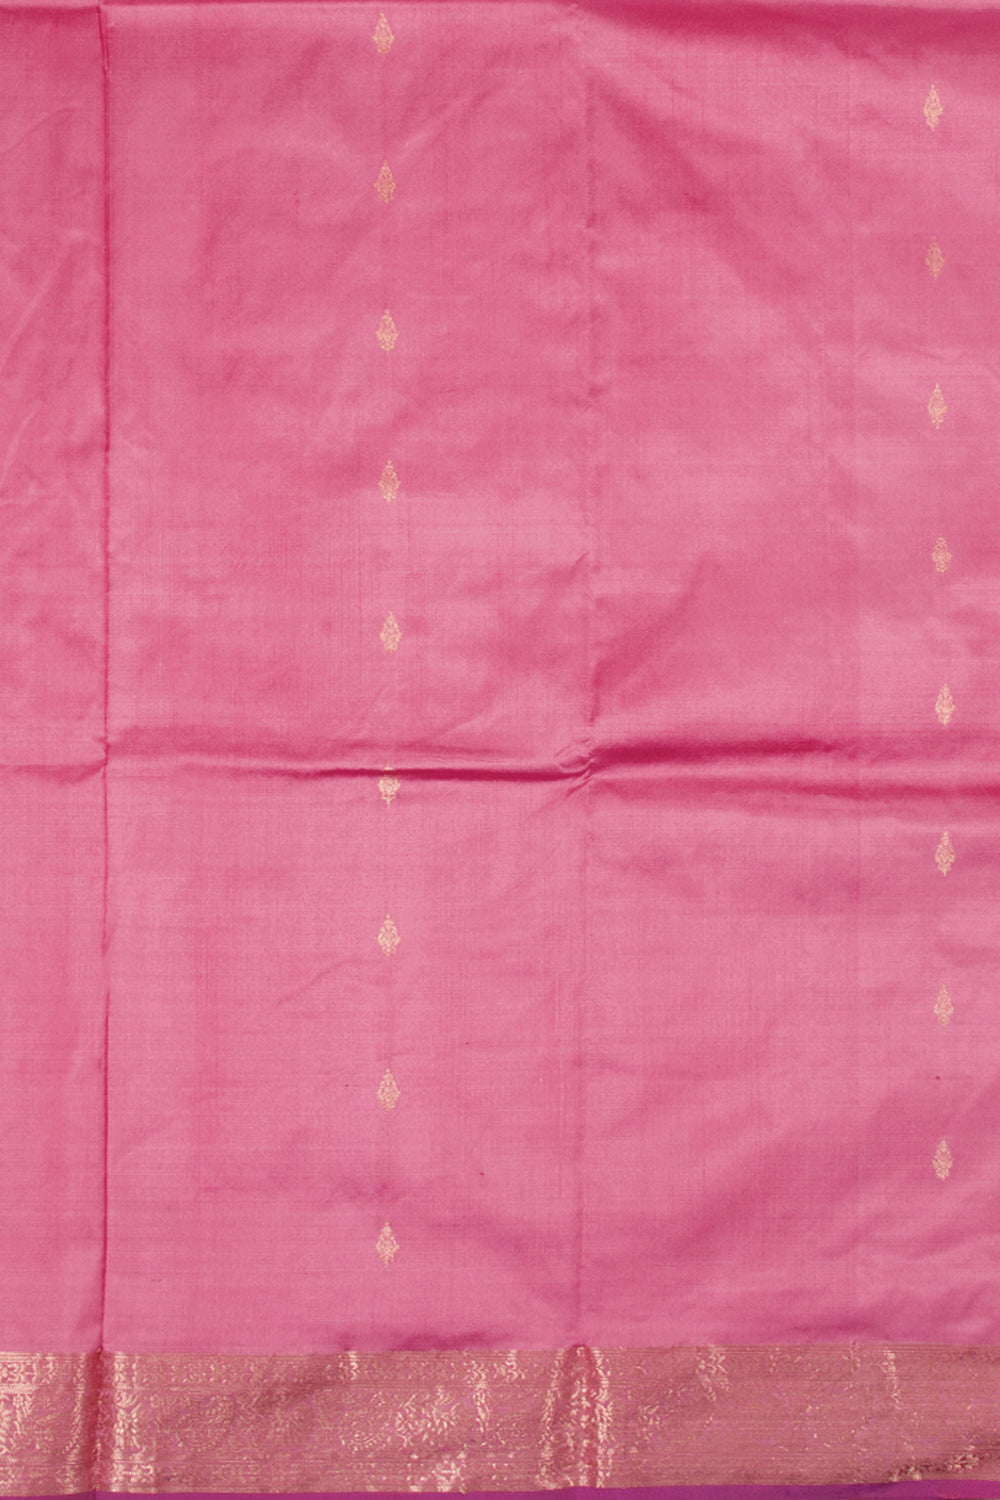 Rose Pink Handloom Banarasi Silk Saree10063610